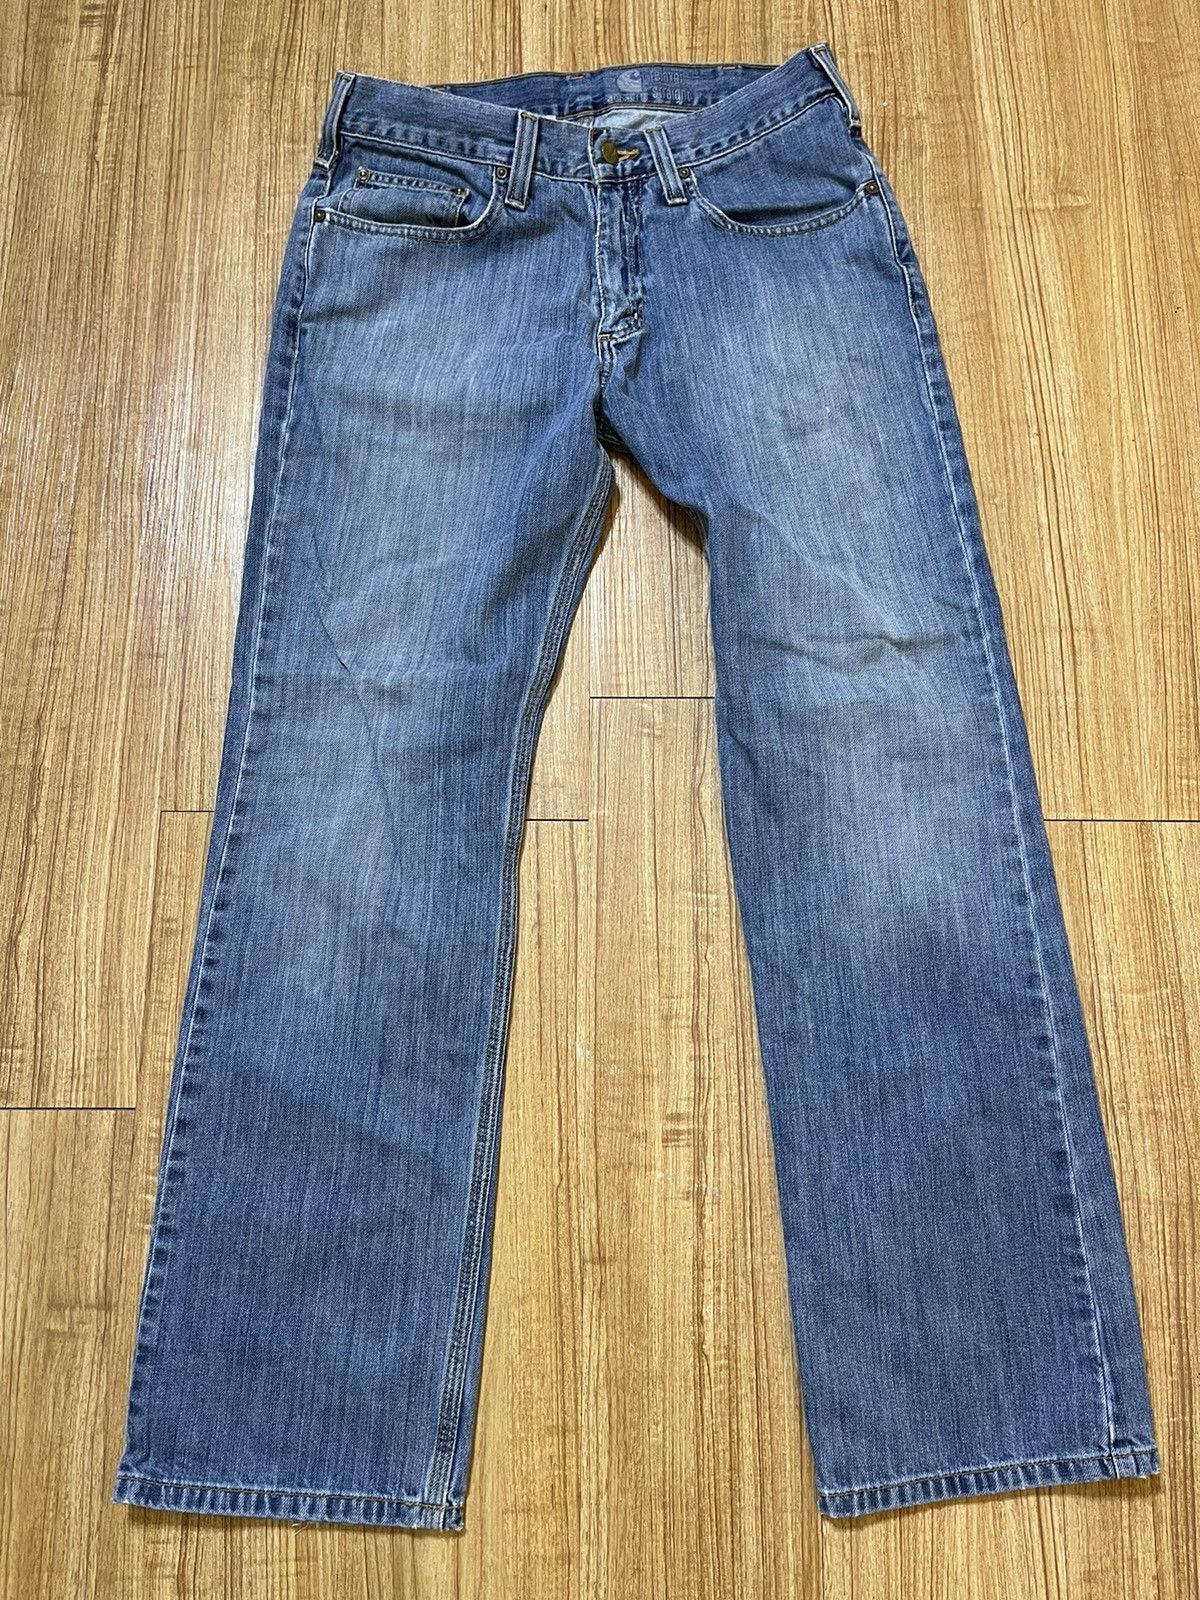 Carhartt Blue Carhartt jean pants Size US 32 / EU 48 - 2 Preview